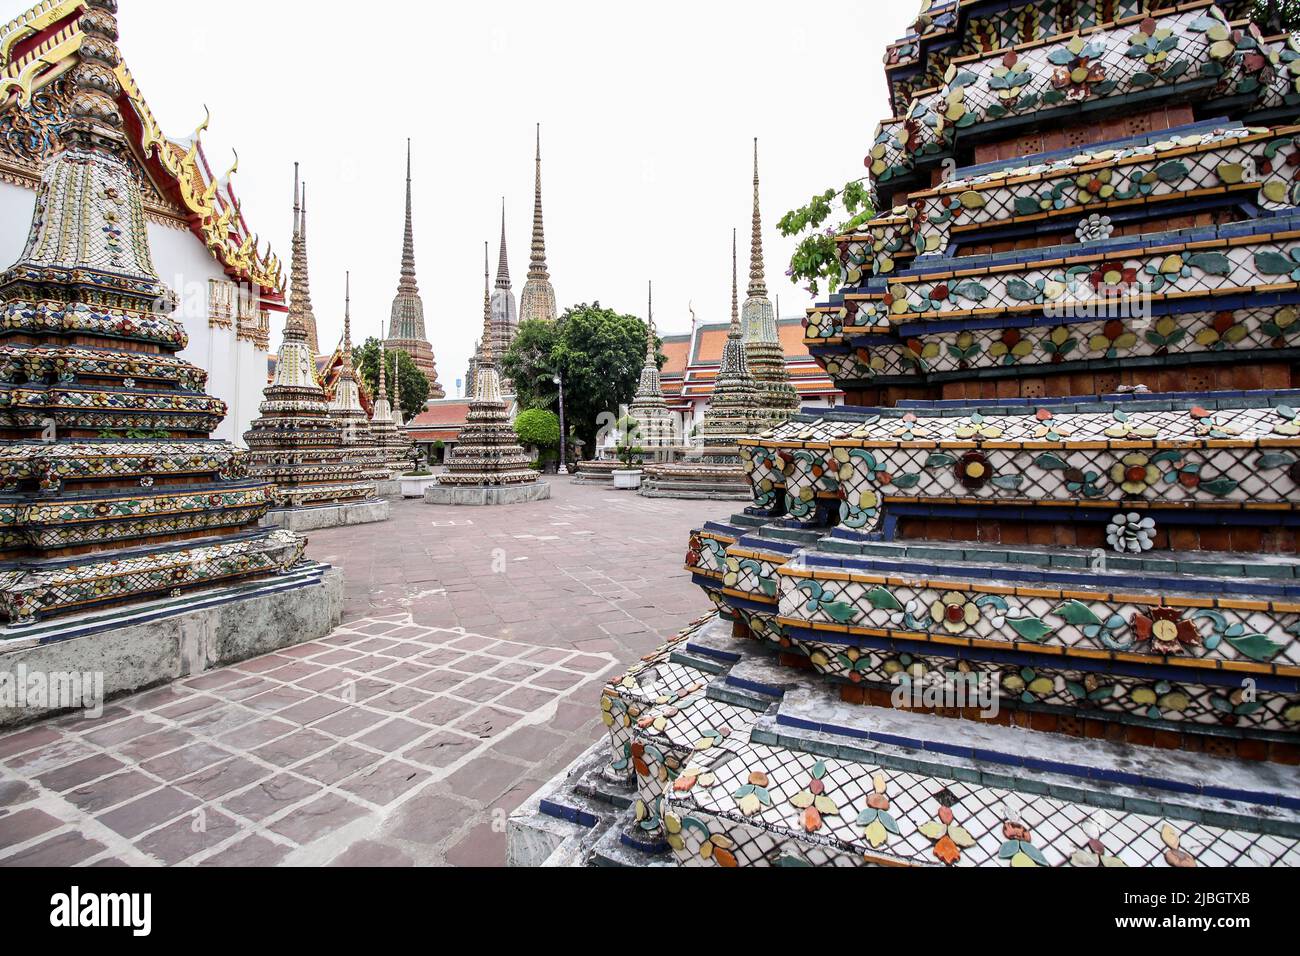 Bangkok, Thailand - 15 2017. März: Wat Pho, Bangkok. Wat Pho ist ein buddhistischer Tempelkomplex im Bezirk Phra Nakhon auf der Insel Rattanakosin. Stockfoto